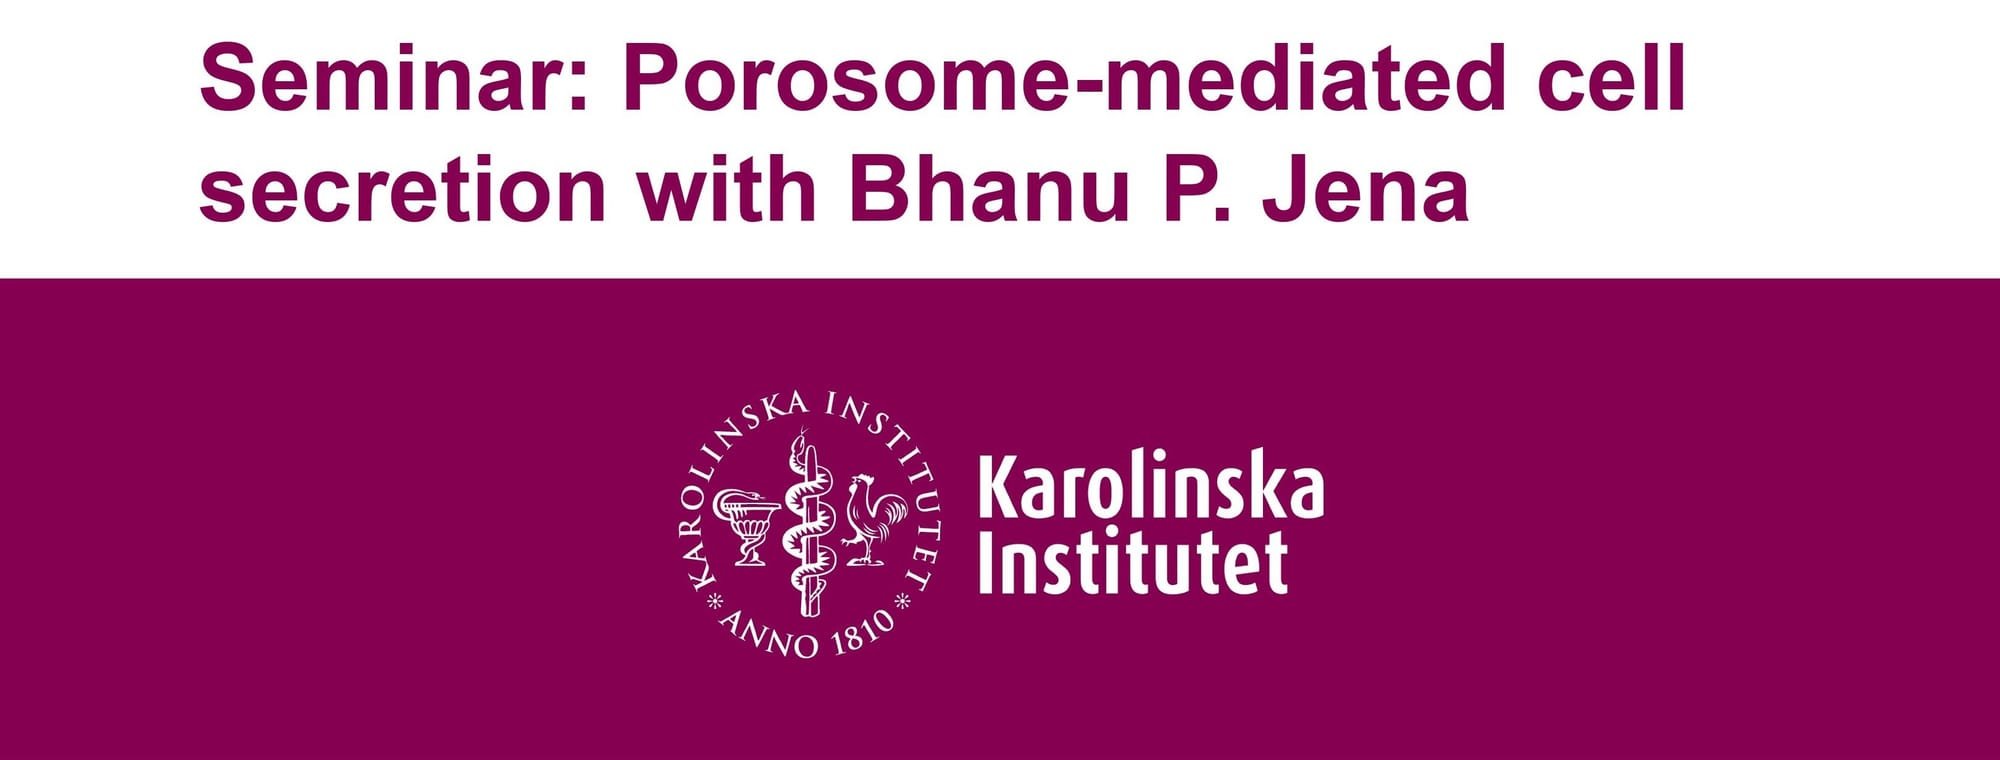 MMI Director presented invited lecture at the Karolinska Institute, Stockholm, Sweden, Sept. 9, 2022